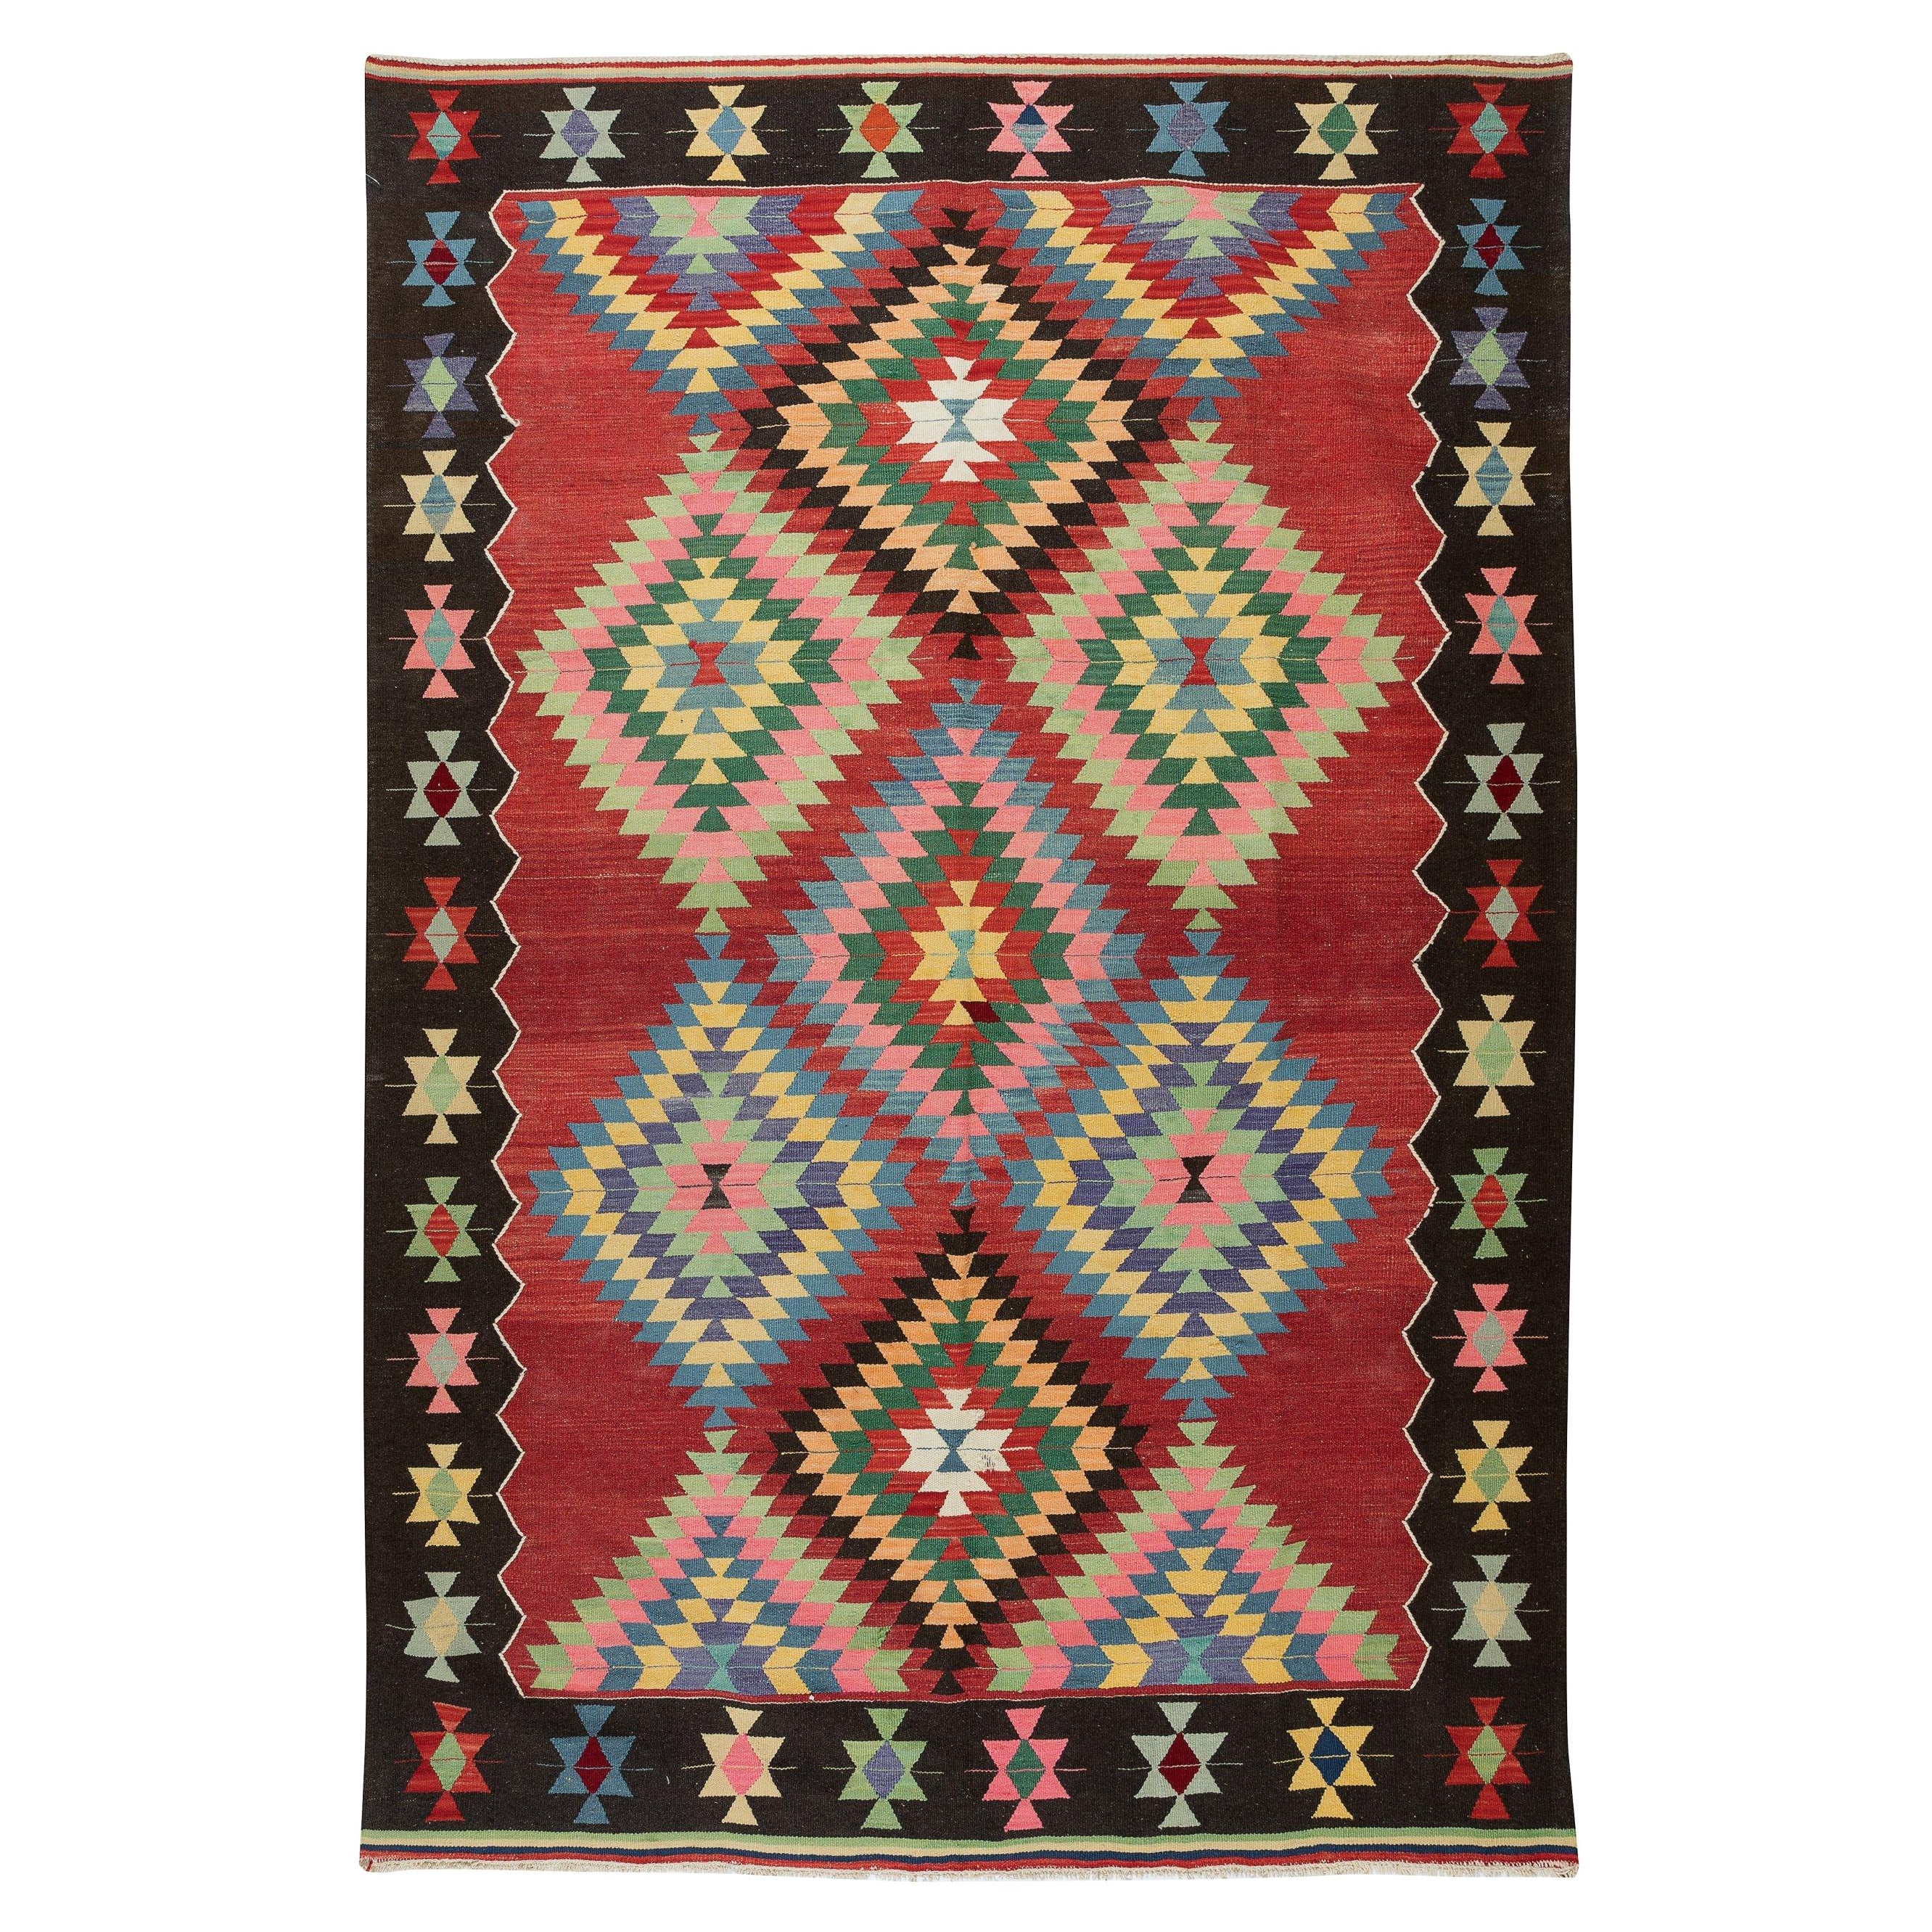 farbenfroher handgewebter Vintage-Kelim-Teppich aus türkischer Wolle mit geometrischem Design, 6x8.7 m